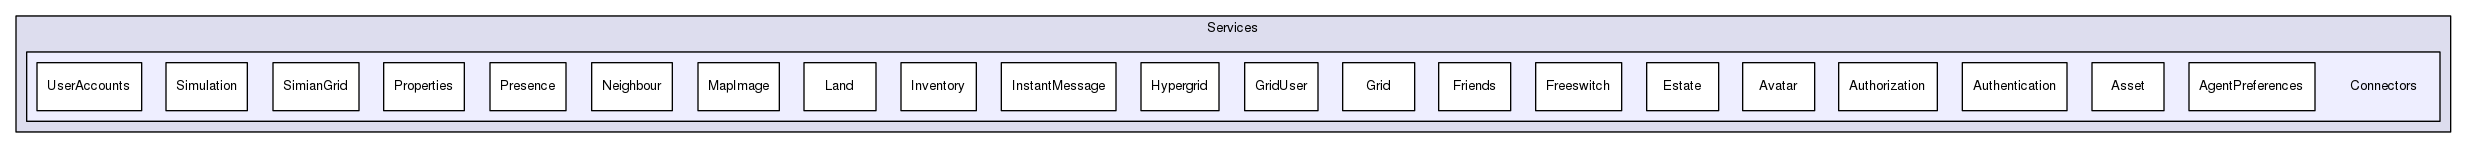 Services/Connectors